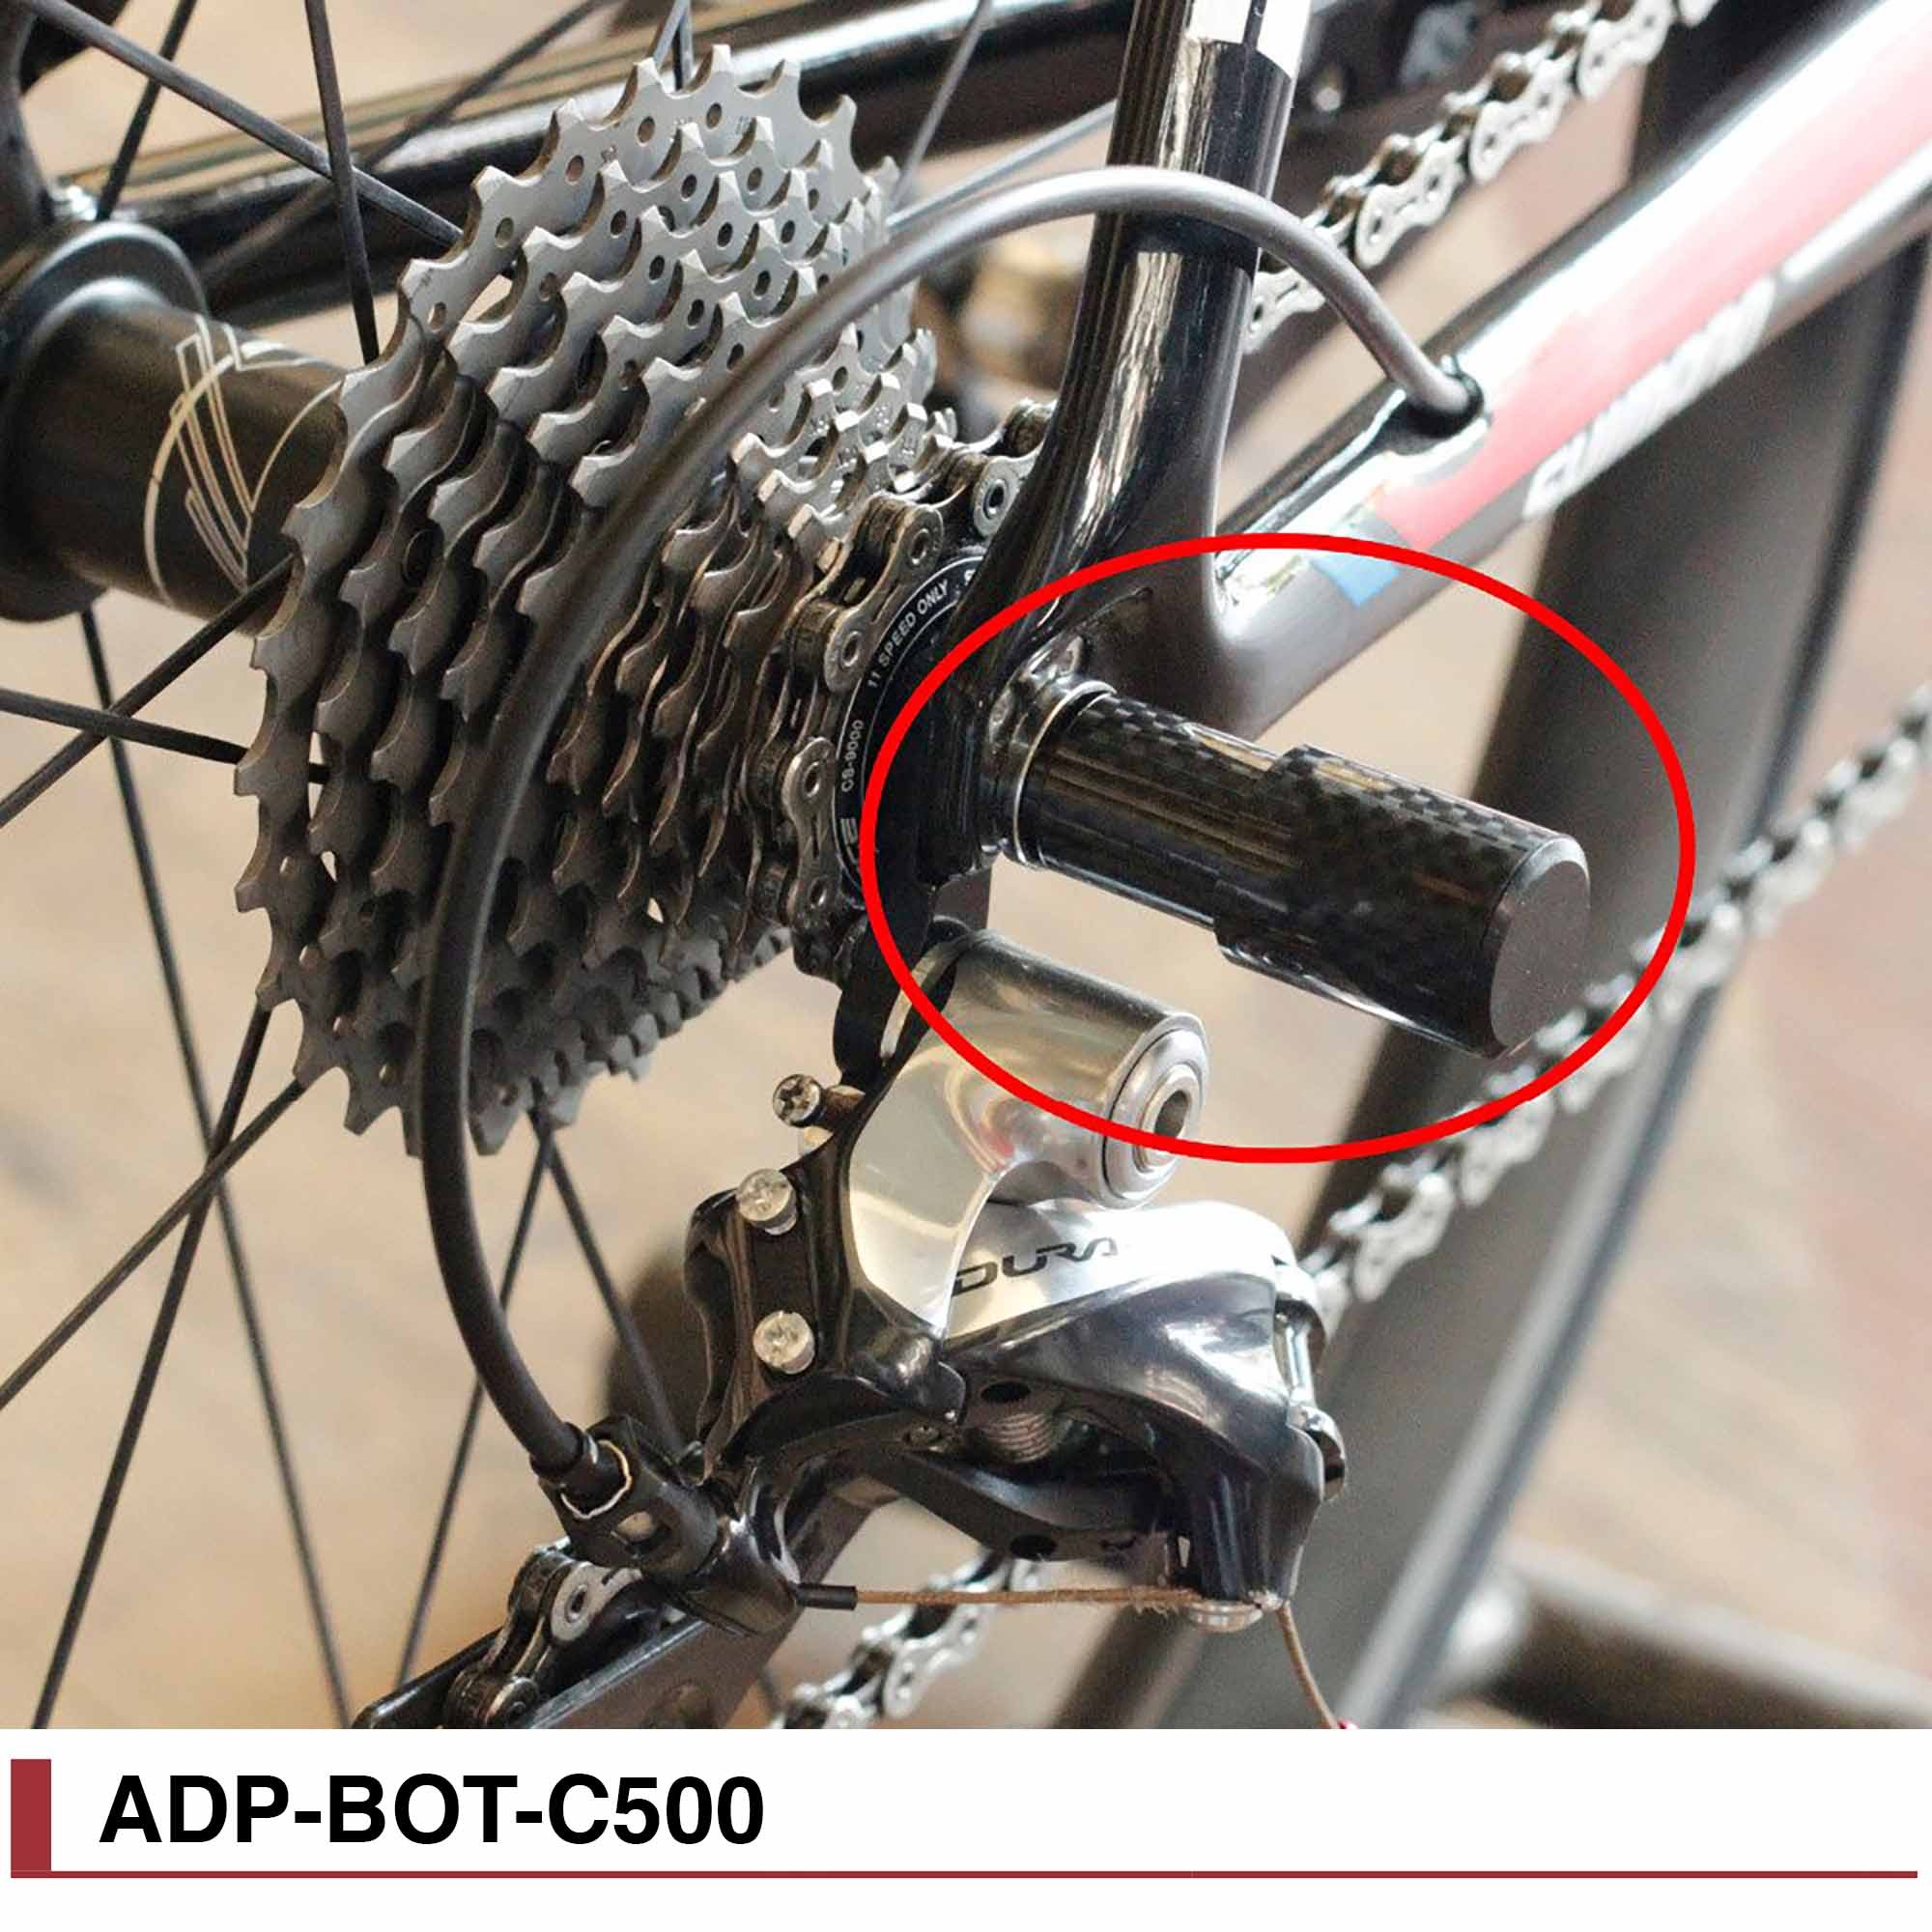 Как поменять задние скорости на велосипеде. Защита заднего переключателя велосипеда aspect. Защита переключателя скоростей велосипеда Stark. Защита заднего переключателя карбон. Trek защита переключателя.